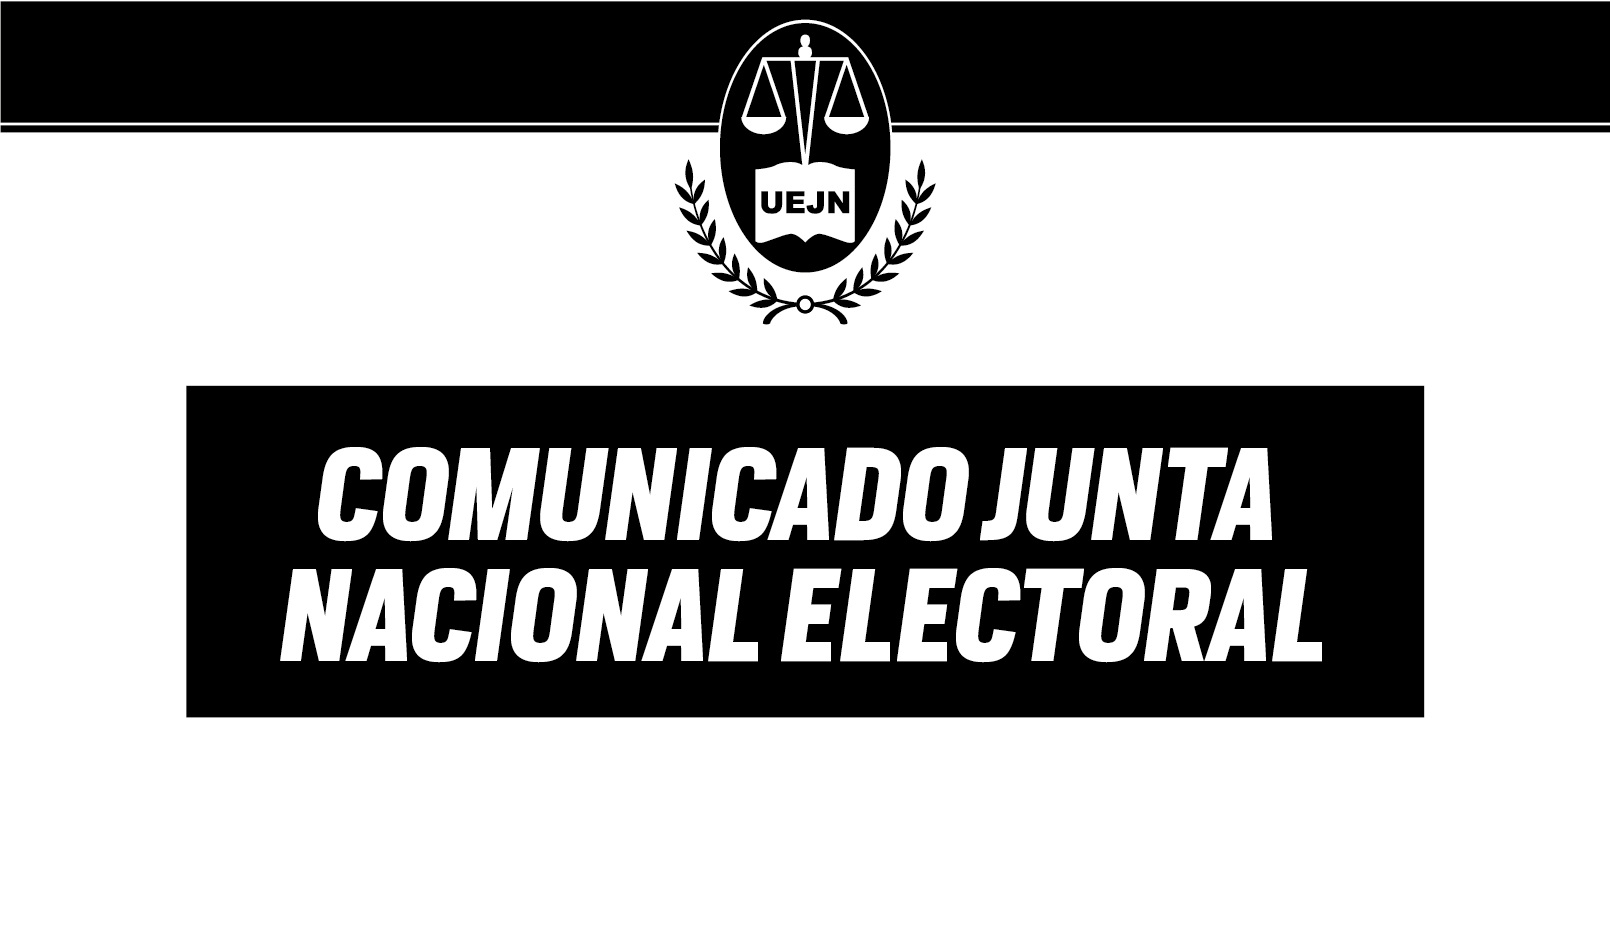 Comunicado Junta Nacional Electoral UEJN Unión de Empleados de la